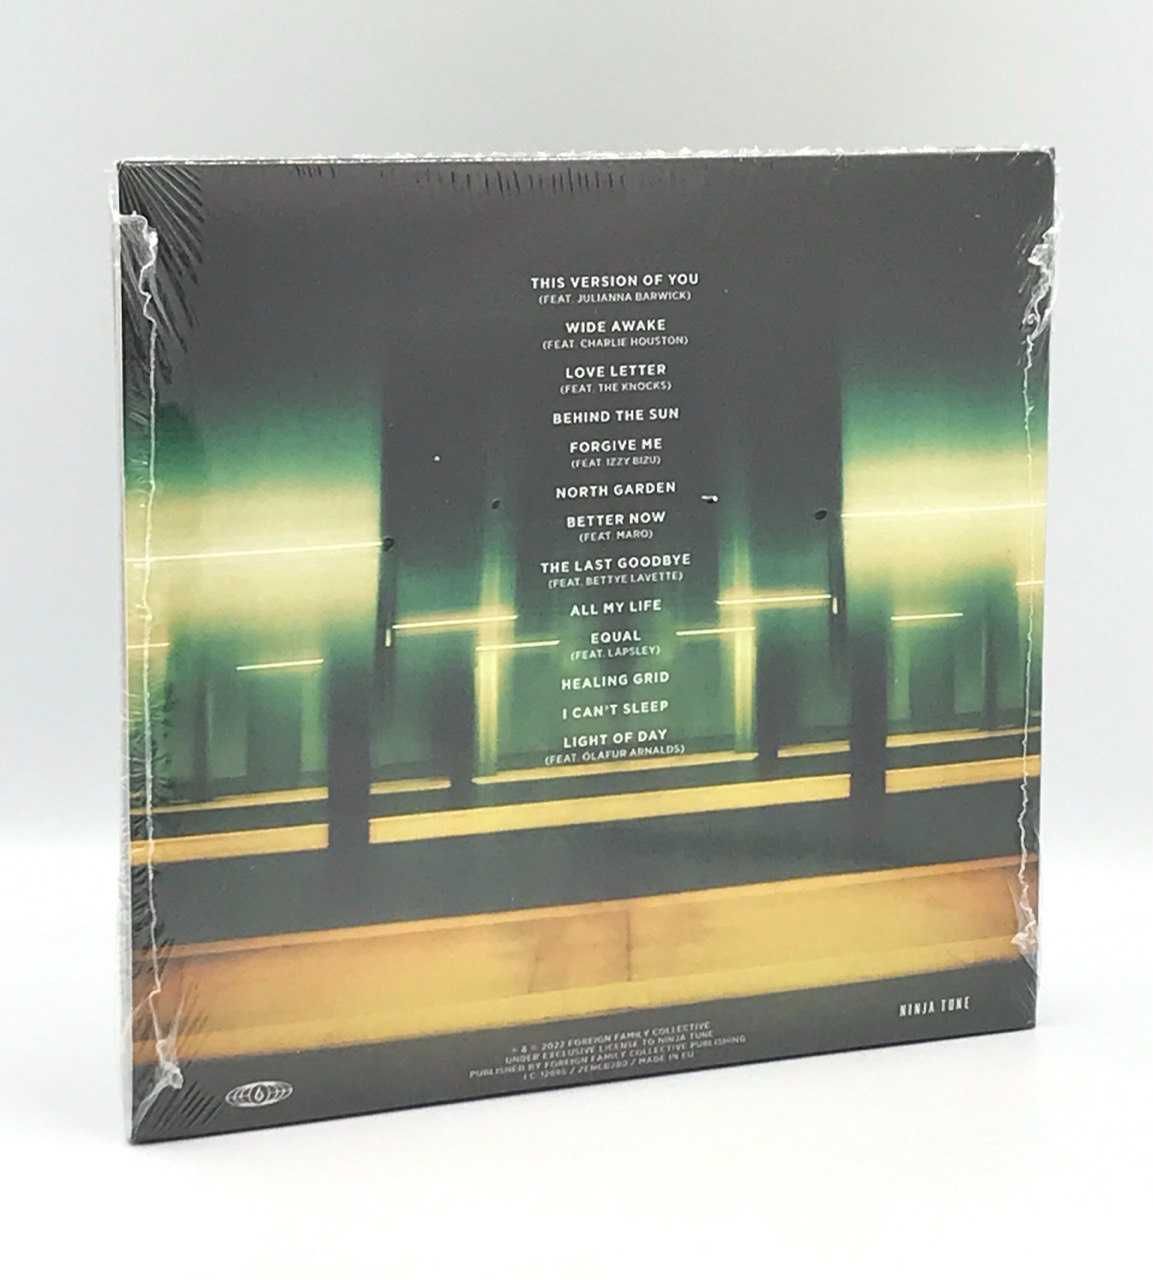 Sigur Rós – Hvarf - Heim / 2 CD ( 2007, E.U.)